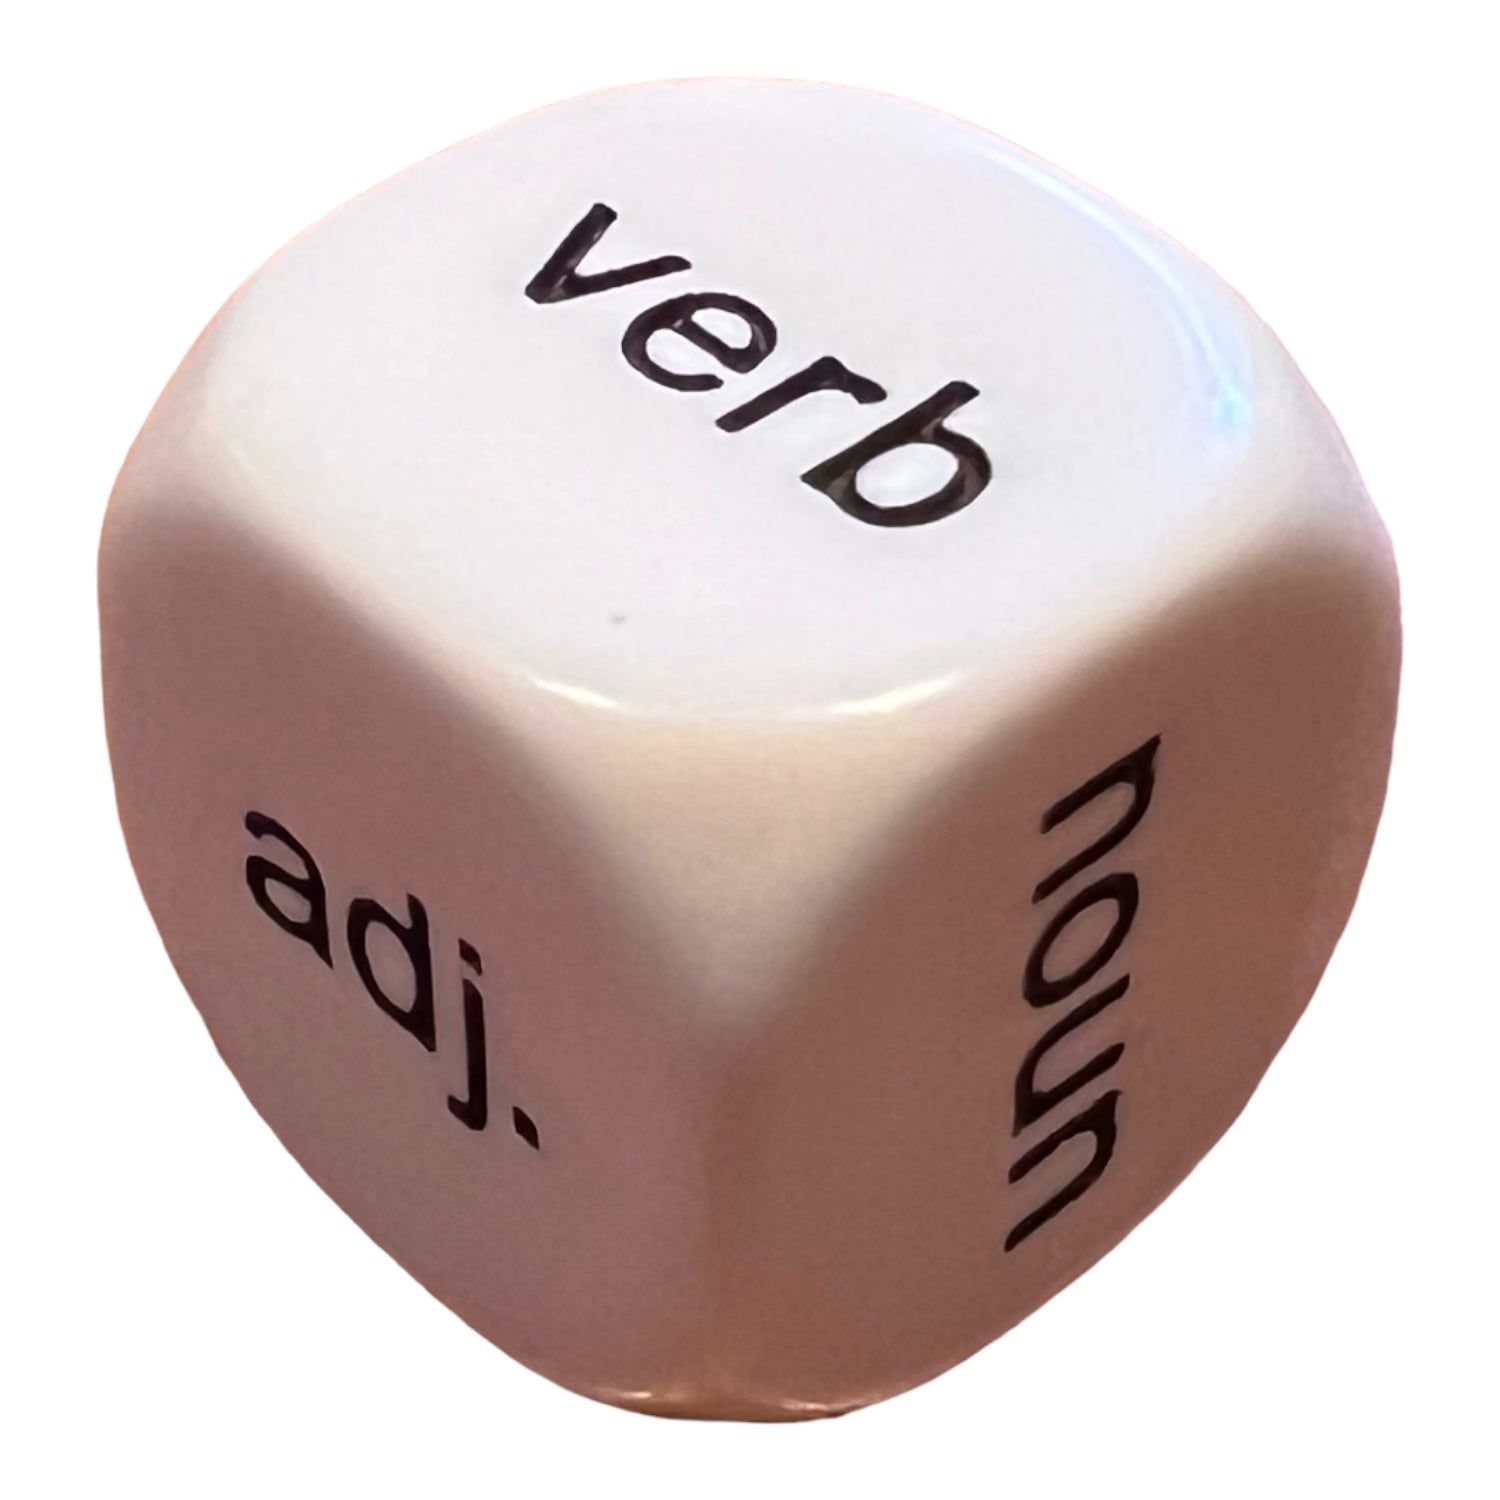 Dice - Parts of Speech Dice (Noun, Verb, Adjective)